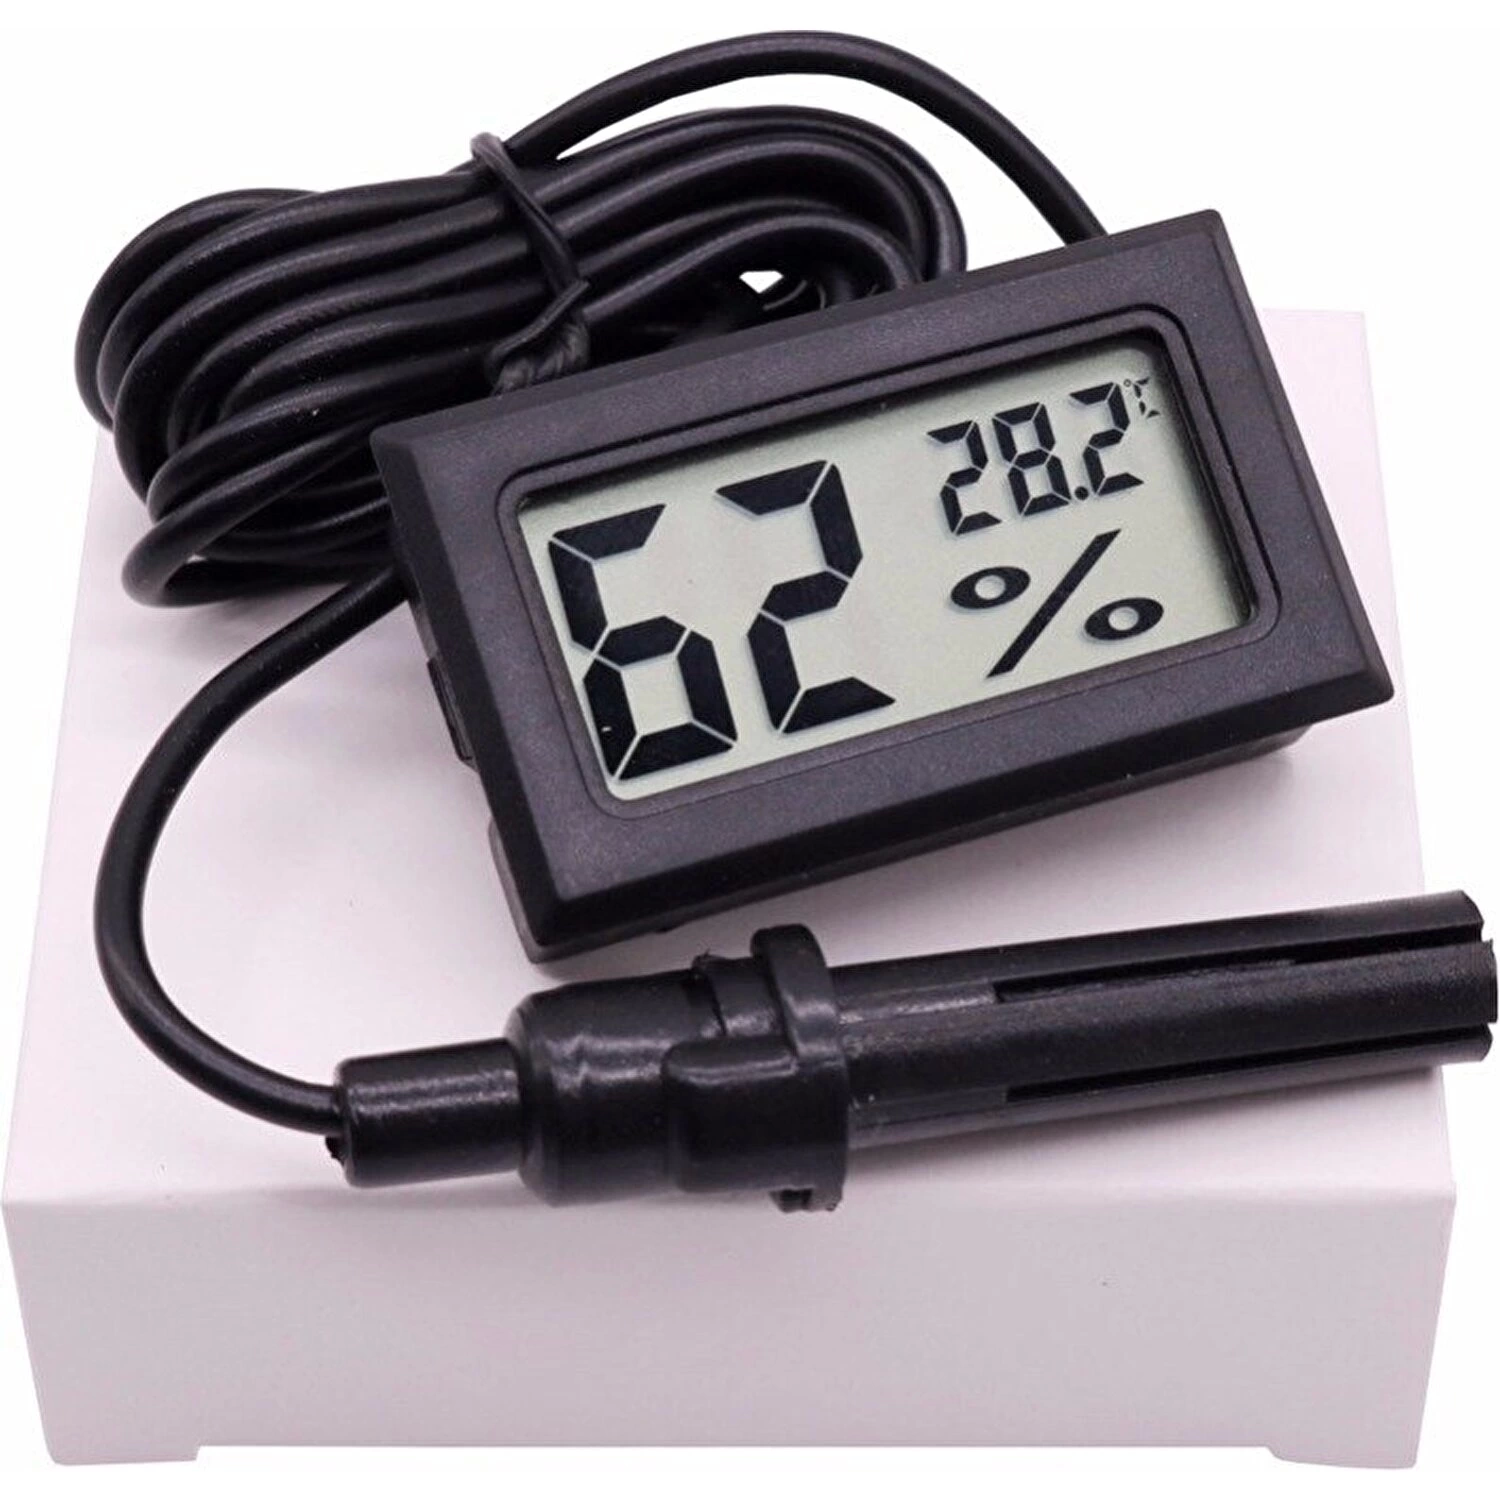 Dijital Ekran Sıcaklık Ve Nem Ölçer - Termometre Higrometre Kuluçka ( Lisinya )